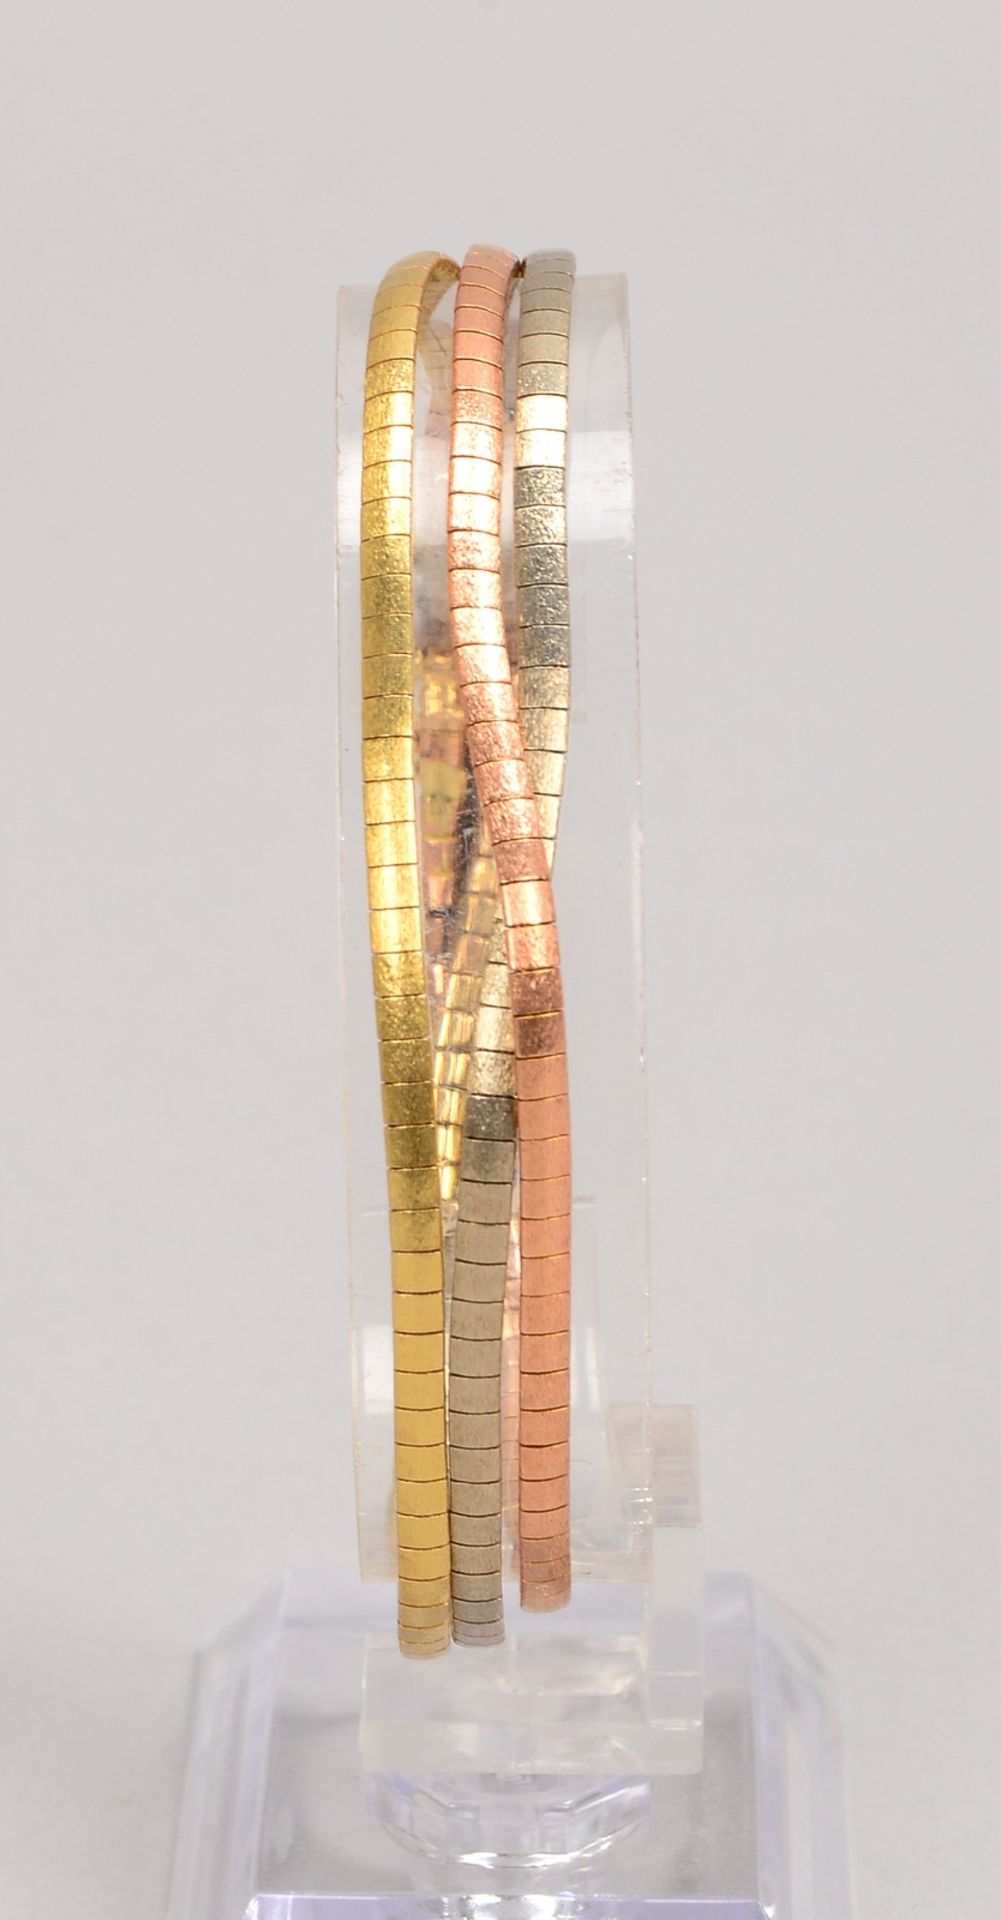 Armband, 585 Gold/Tricolor, 3-strängig, mit Steckschließe; Länge 18,5 cm, Gewicht 17,90 g - Bild 2 aus 2